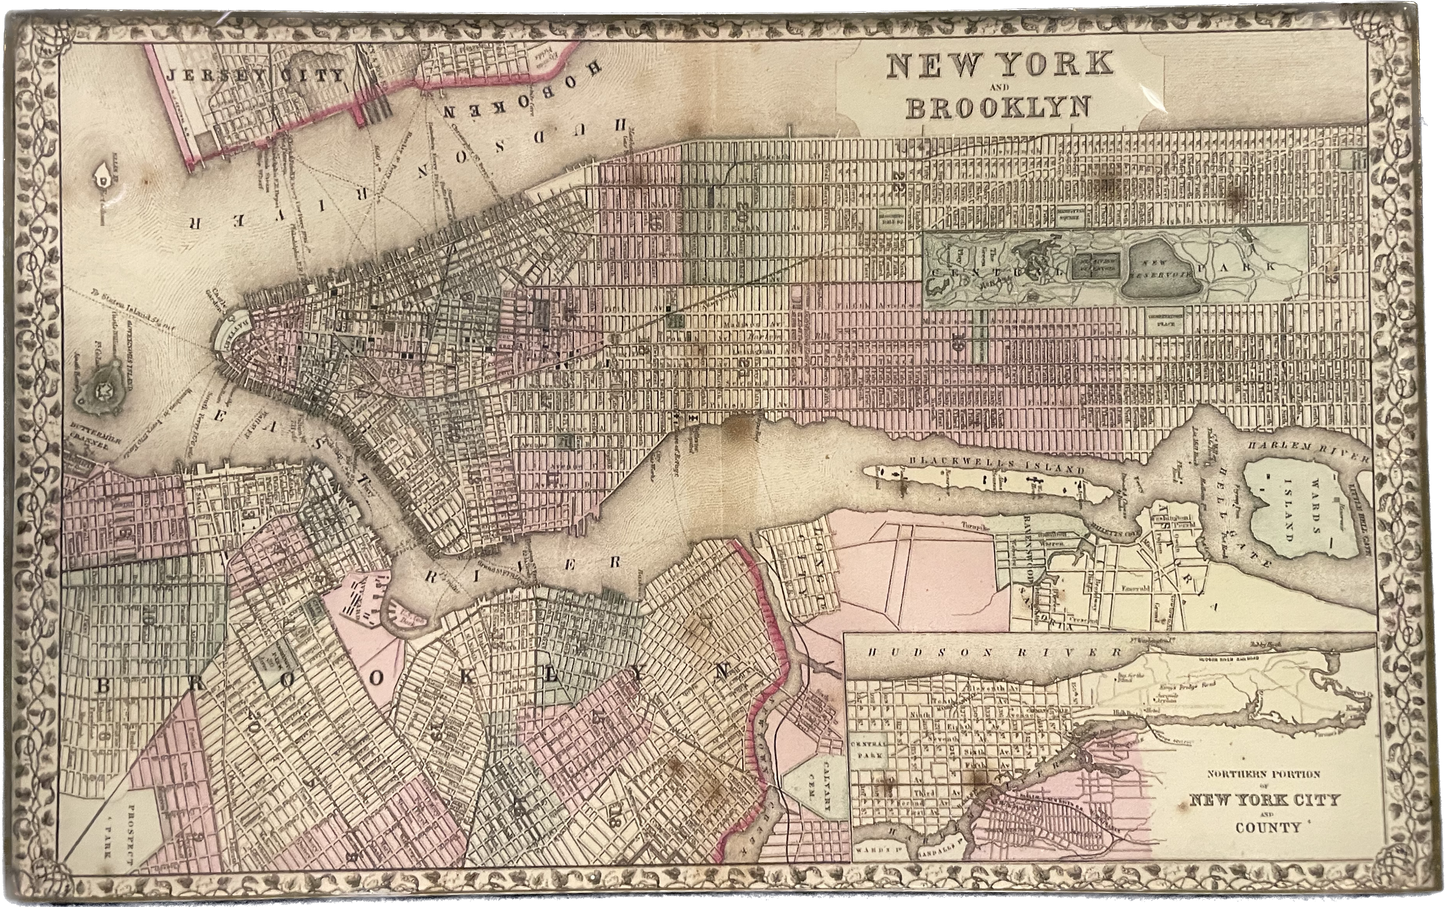 NY & Brooklyn with Border Decoupage Tray 5" x 8"